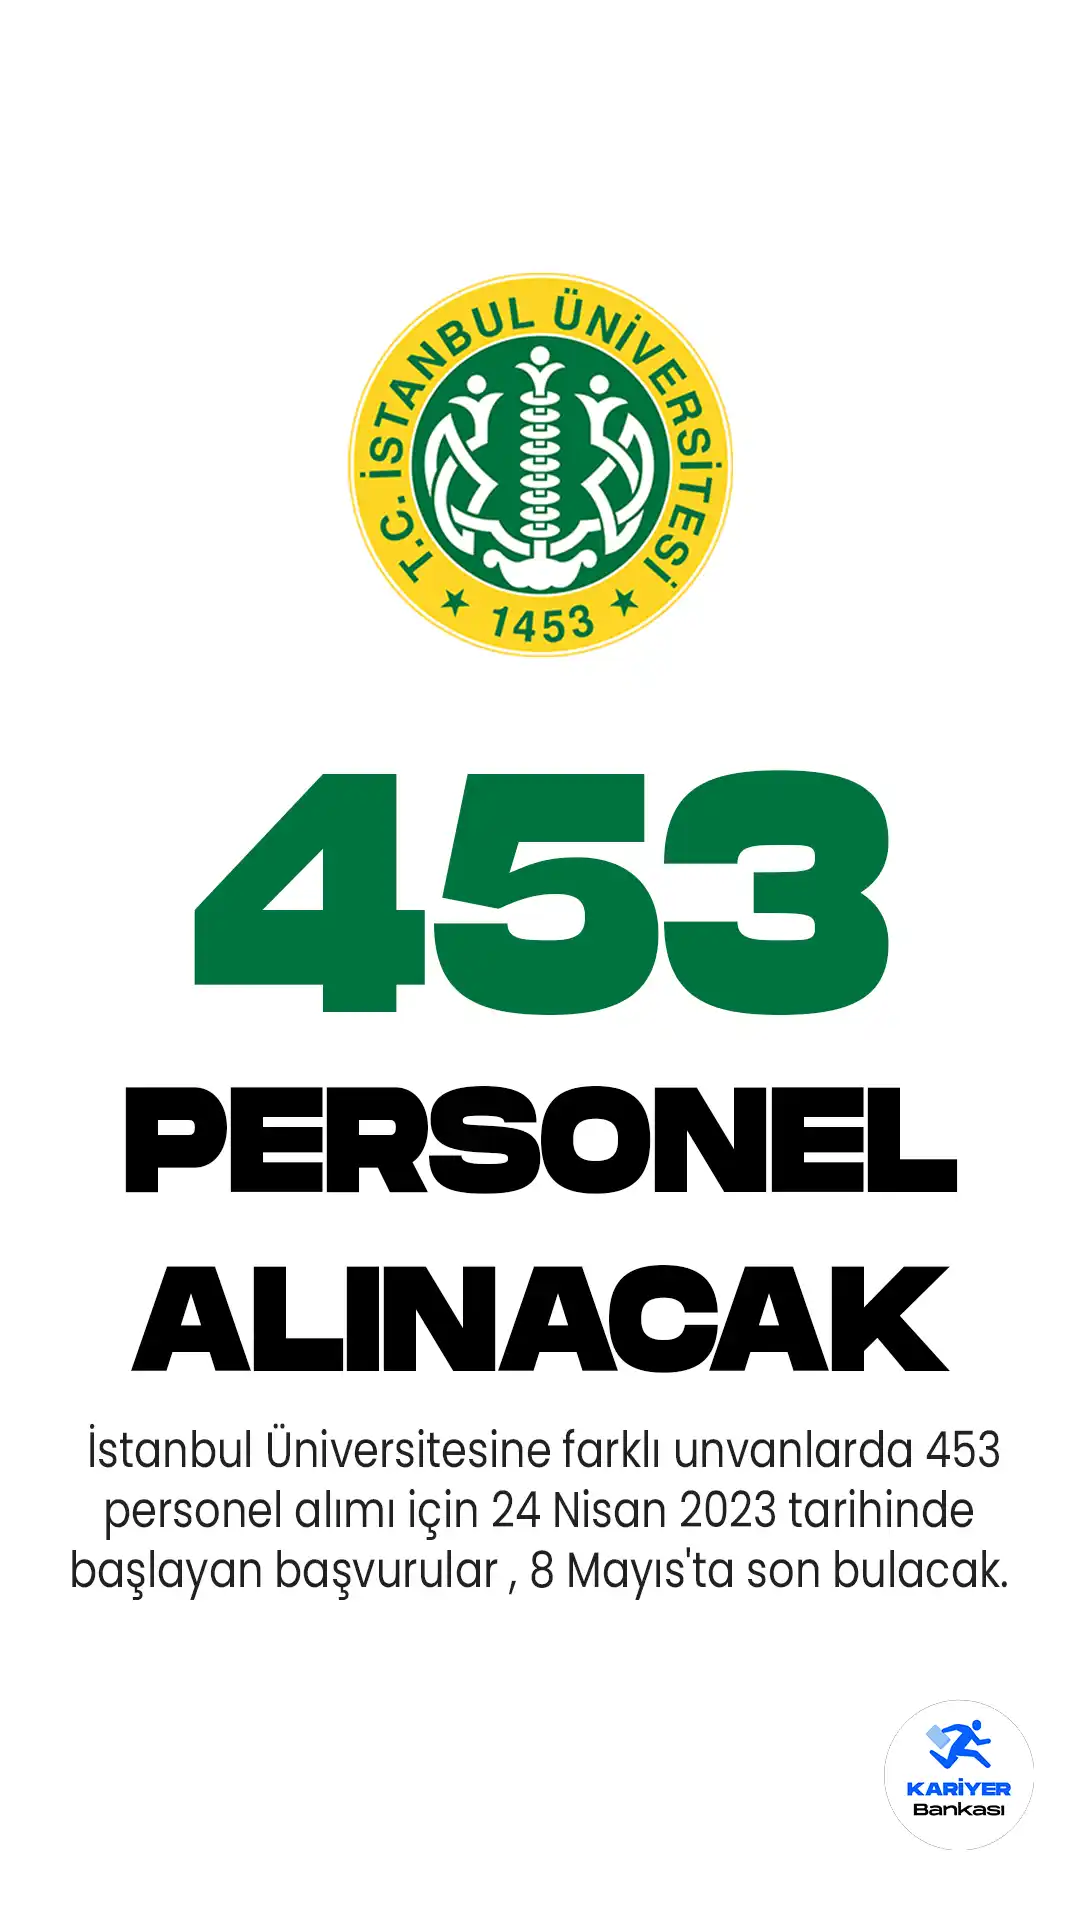 İstanbul Üniversitesine farklı unvanlarda 453 personel alımı için 24 Nisan 2023 tarihinde başlayan başvurular , 8 Mayıs'ta son bulacak.